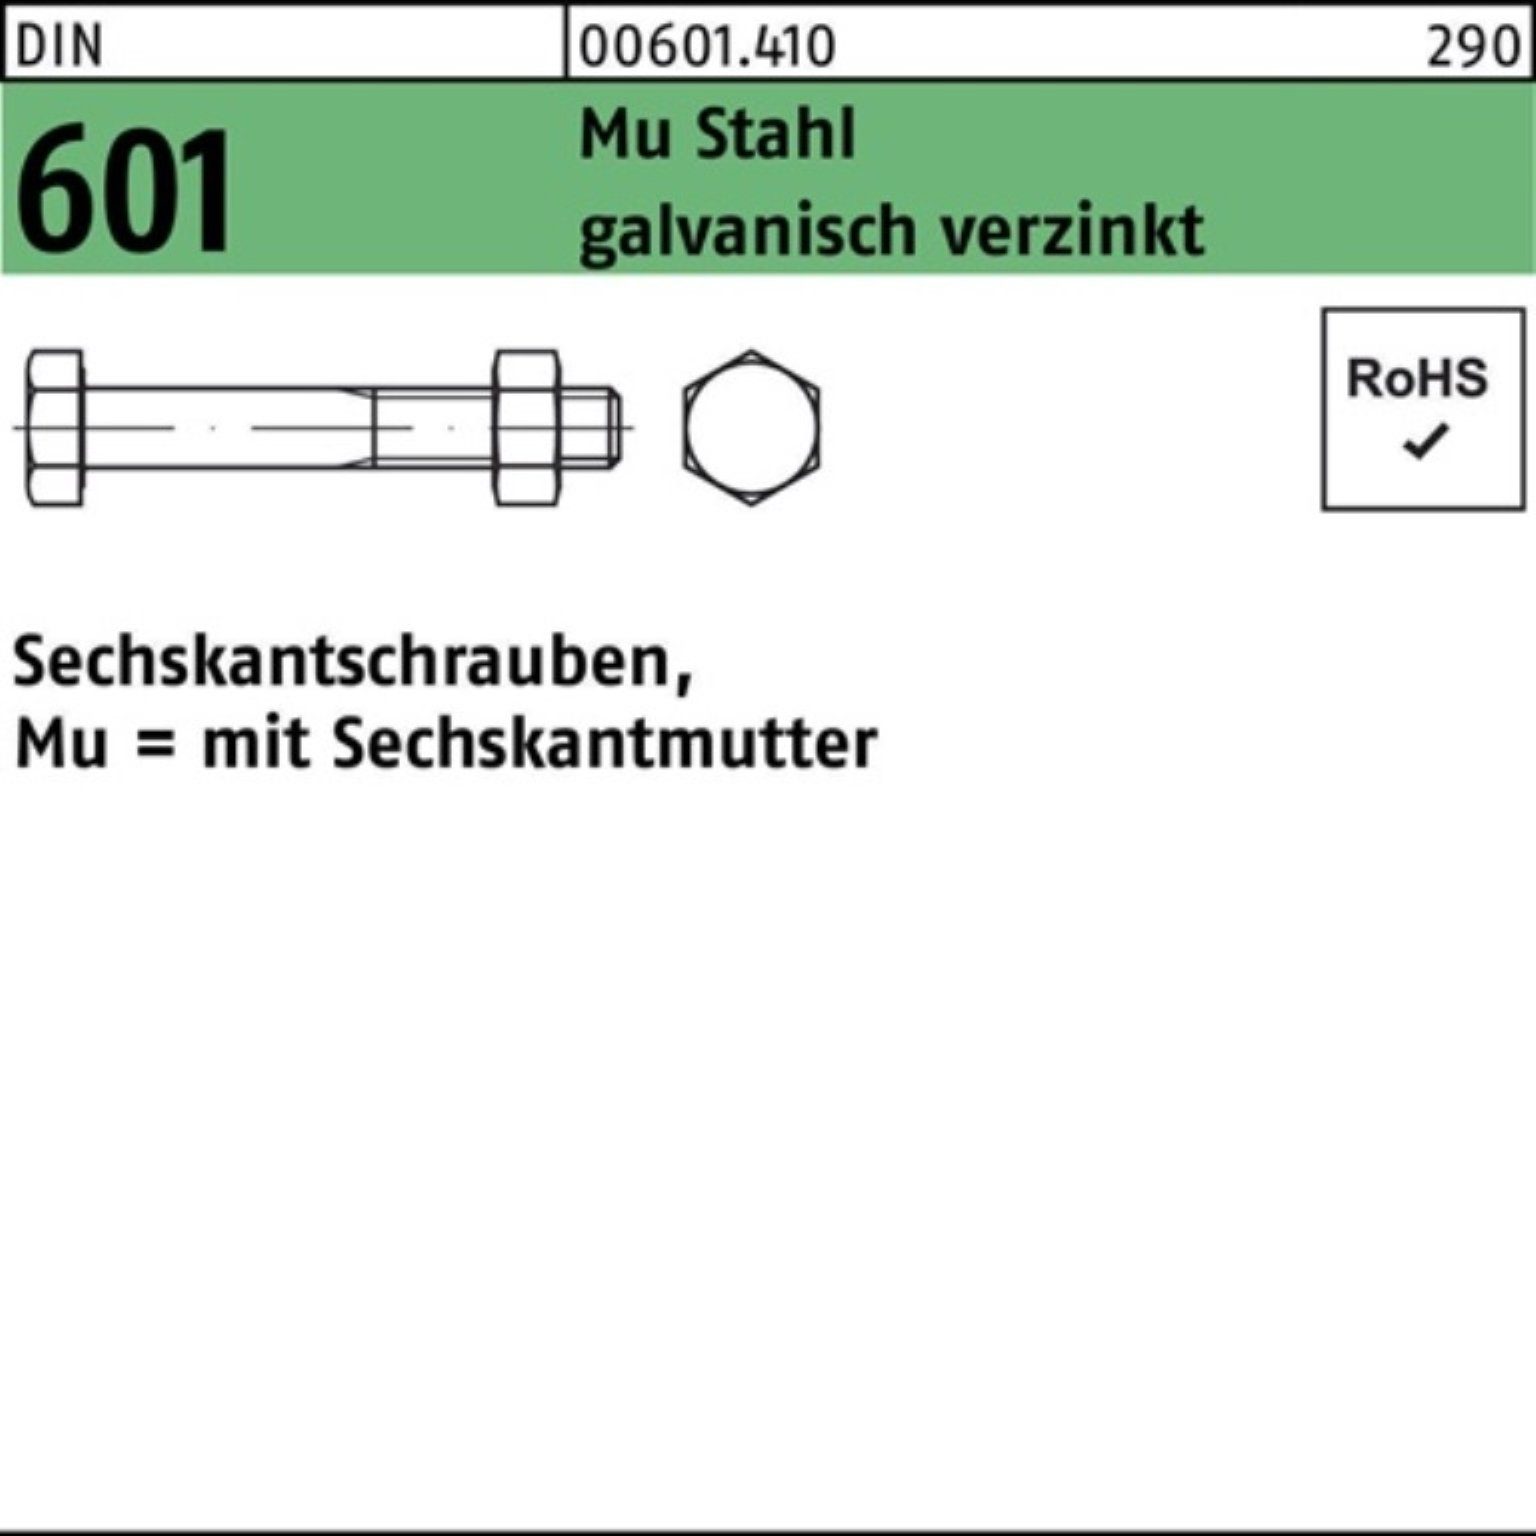 Reyher Sechskantmutter 200er Pack Sechskantschraube DIN 601 Sechskantmutter M8x60 Mu Stahl 4.